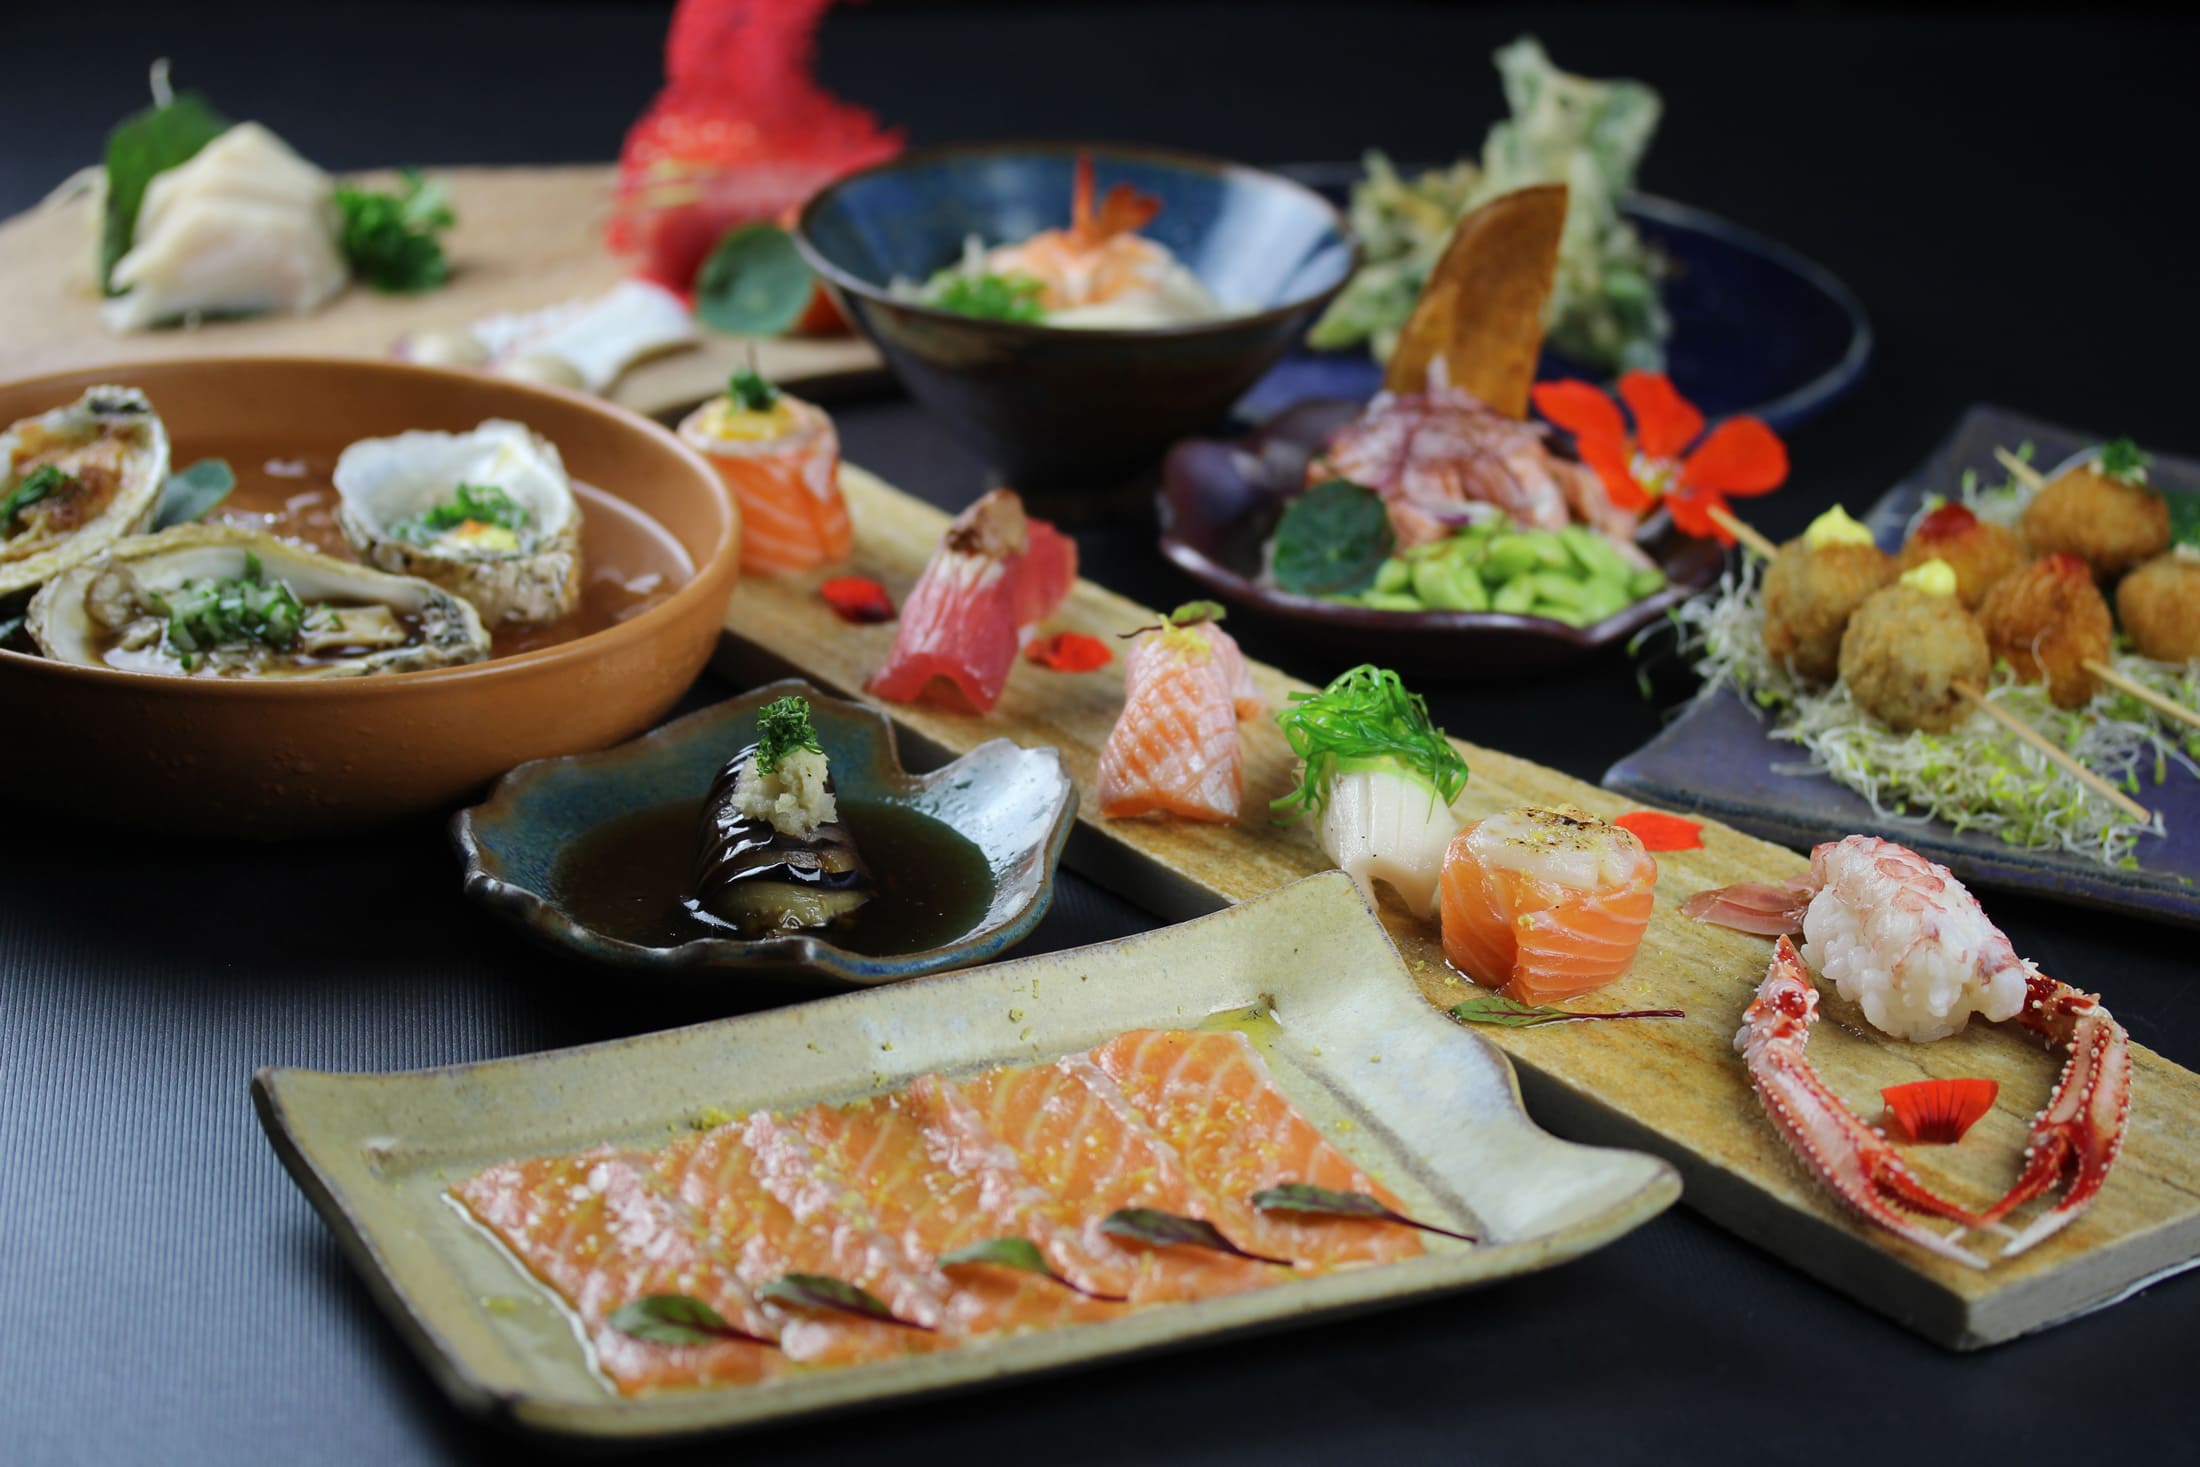 Lugares para comer em Curitiba: comida internacional - Tatibana Japonesa | Sushi | Conexão123